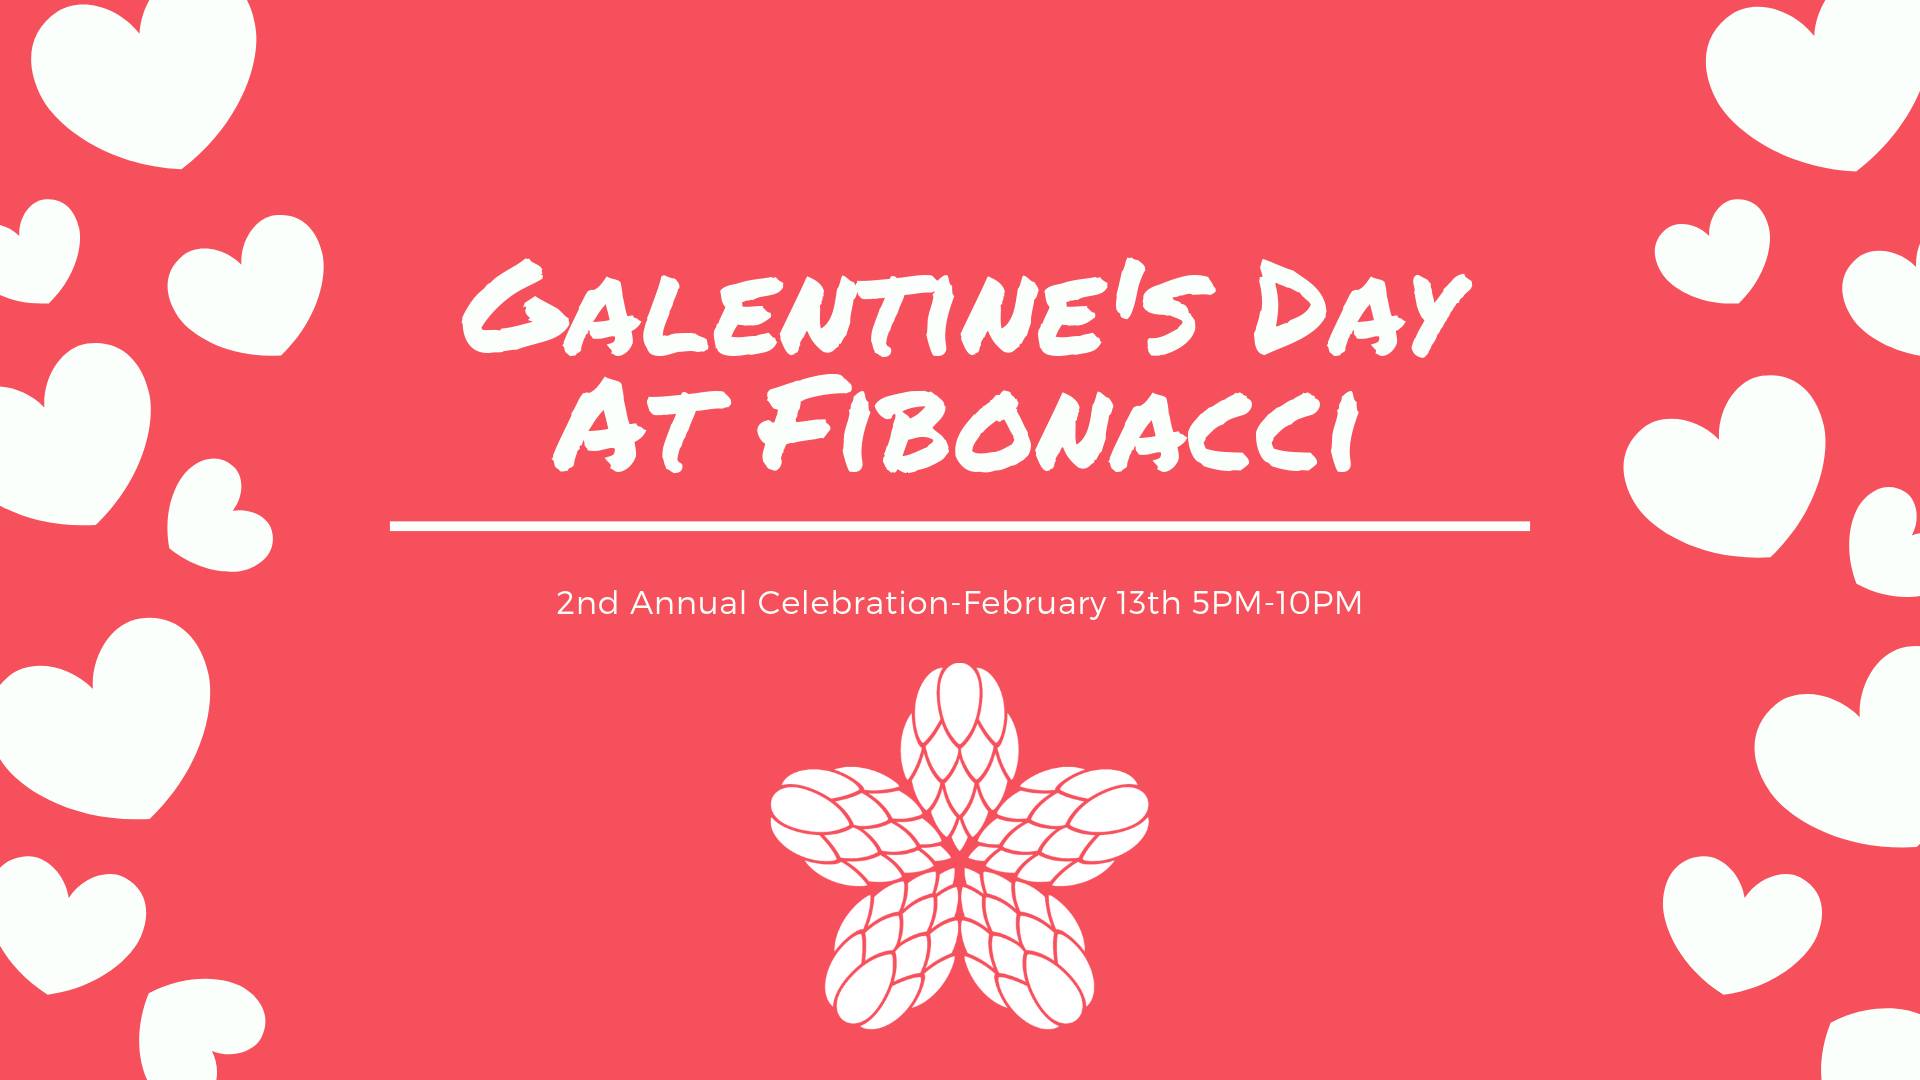 Second Annual Galentine's Day Fibonacci Brewing Company